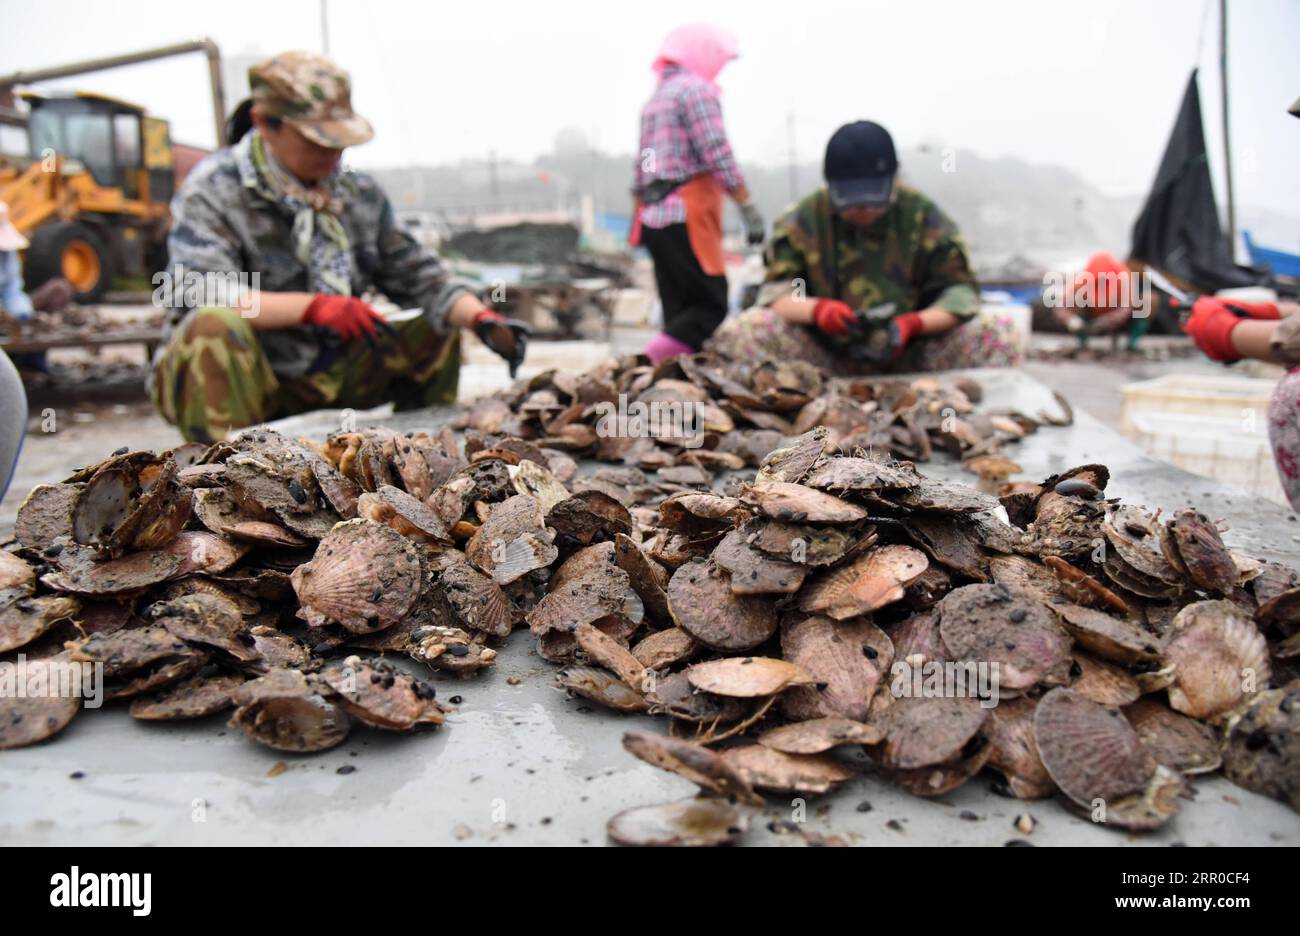 200809 -- YANTAI, 9. August 2020 -- Fischer Jakobsmuscheln auf der Nanhuangcheng-Insel Yantai, ostchinesische Provinz Shandong, 9. August 2020. In den letzten Jahren ist es den Aquafarms um Nanhuangcheng Island gelungen, die Meereswirtschaft zu entwickeln, ohne die ökologischen Vorschriften zu gefährden. Der Gesamtwert der Fischerei- und Aquakulturproduktion der Insel erreichte 2019 88 Millionen Yuan 12,63 Millionen US-Dollar. CHINA-SHANDONG-YANTAI-AQUAFARM-MARINE ÖKOLOGIE CN WANGXKAI PUBLICATIONXNOTXINXCHN Stockfoto